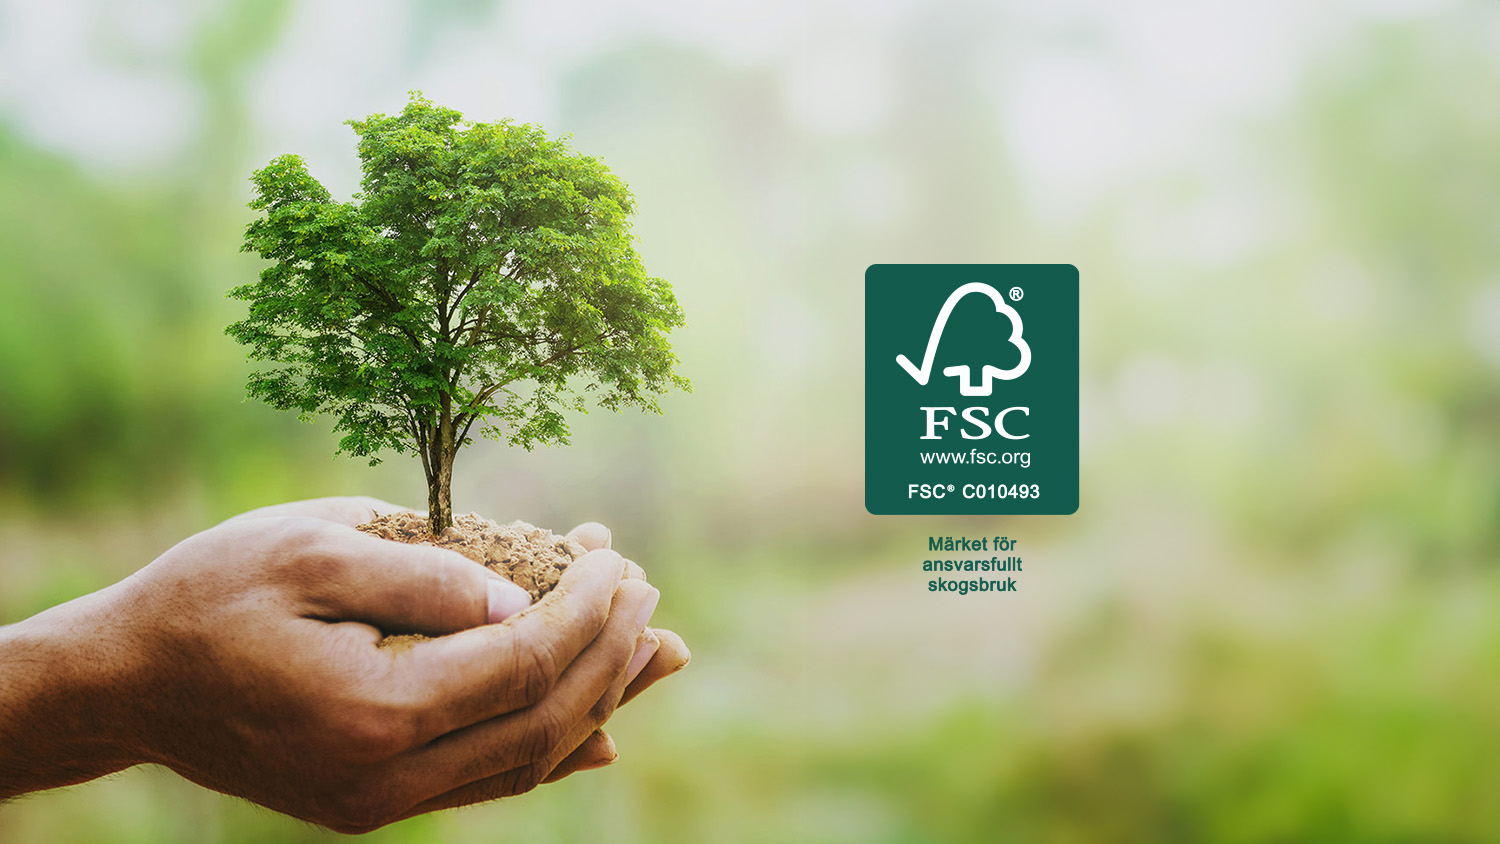 Hånd holder træ og FSC-logo